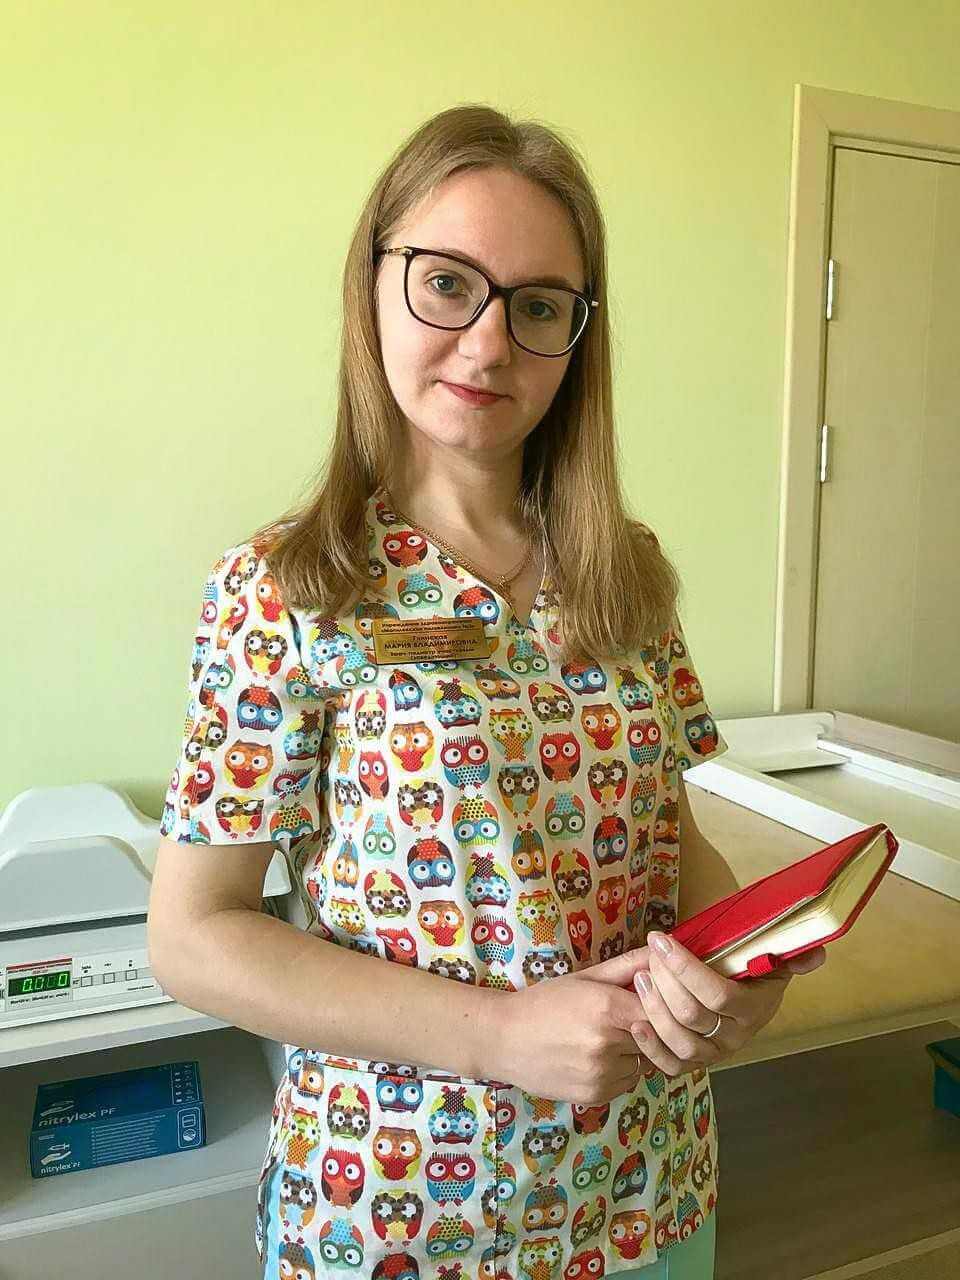 Врач-педиатр Глинская Мария Владимировна осуществляет консультативный приём маленьких пациентов на платной основе